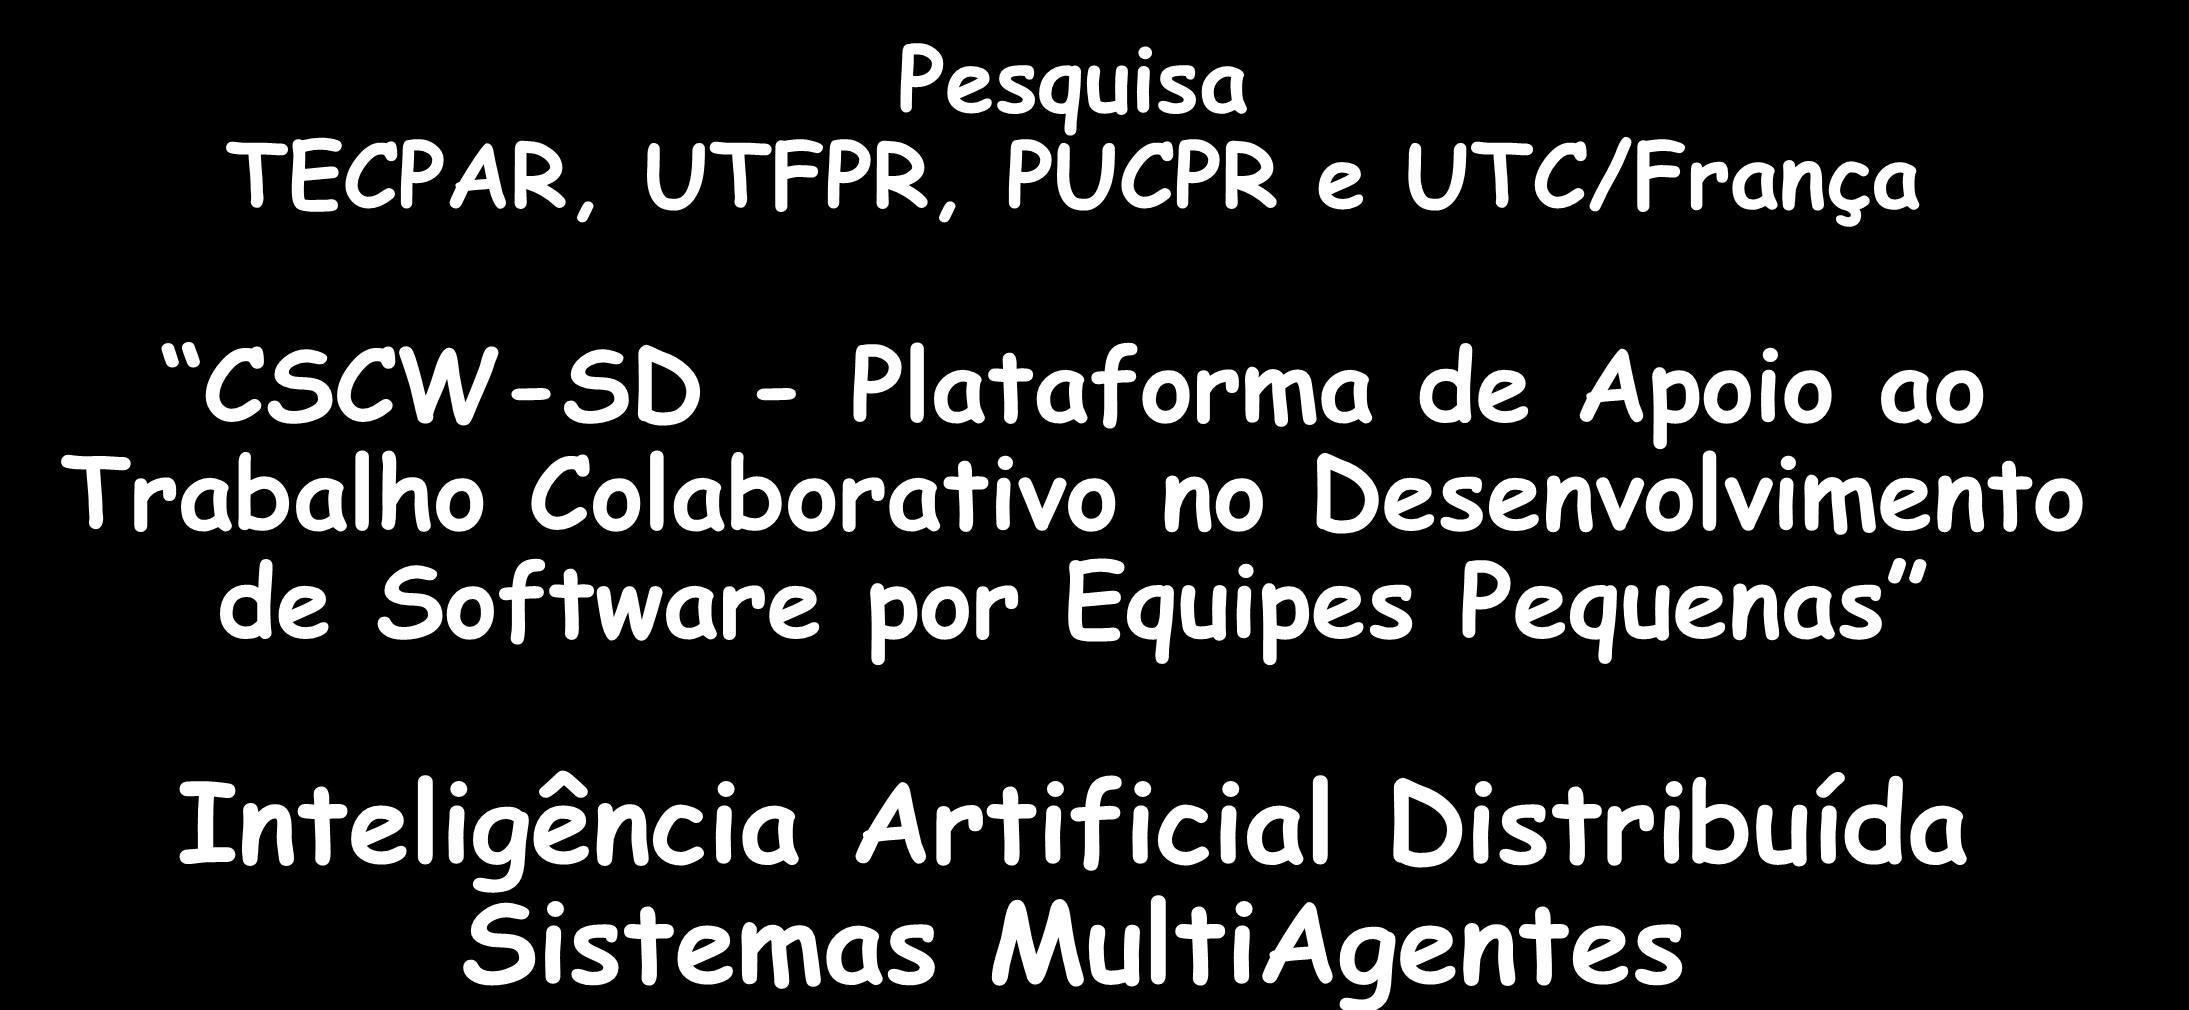 Pesquisa TECPAR, UTFPR, PUCPR e UTC/França CSCW-SD - Plataforma de Apoio ao Trabalho Colaborativo no